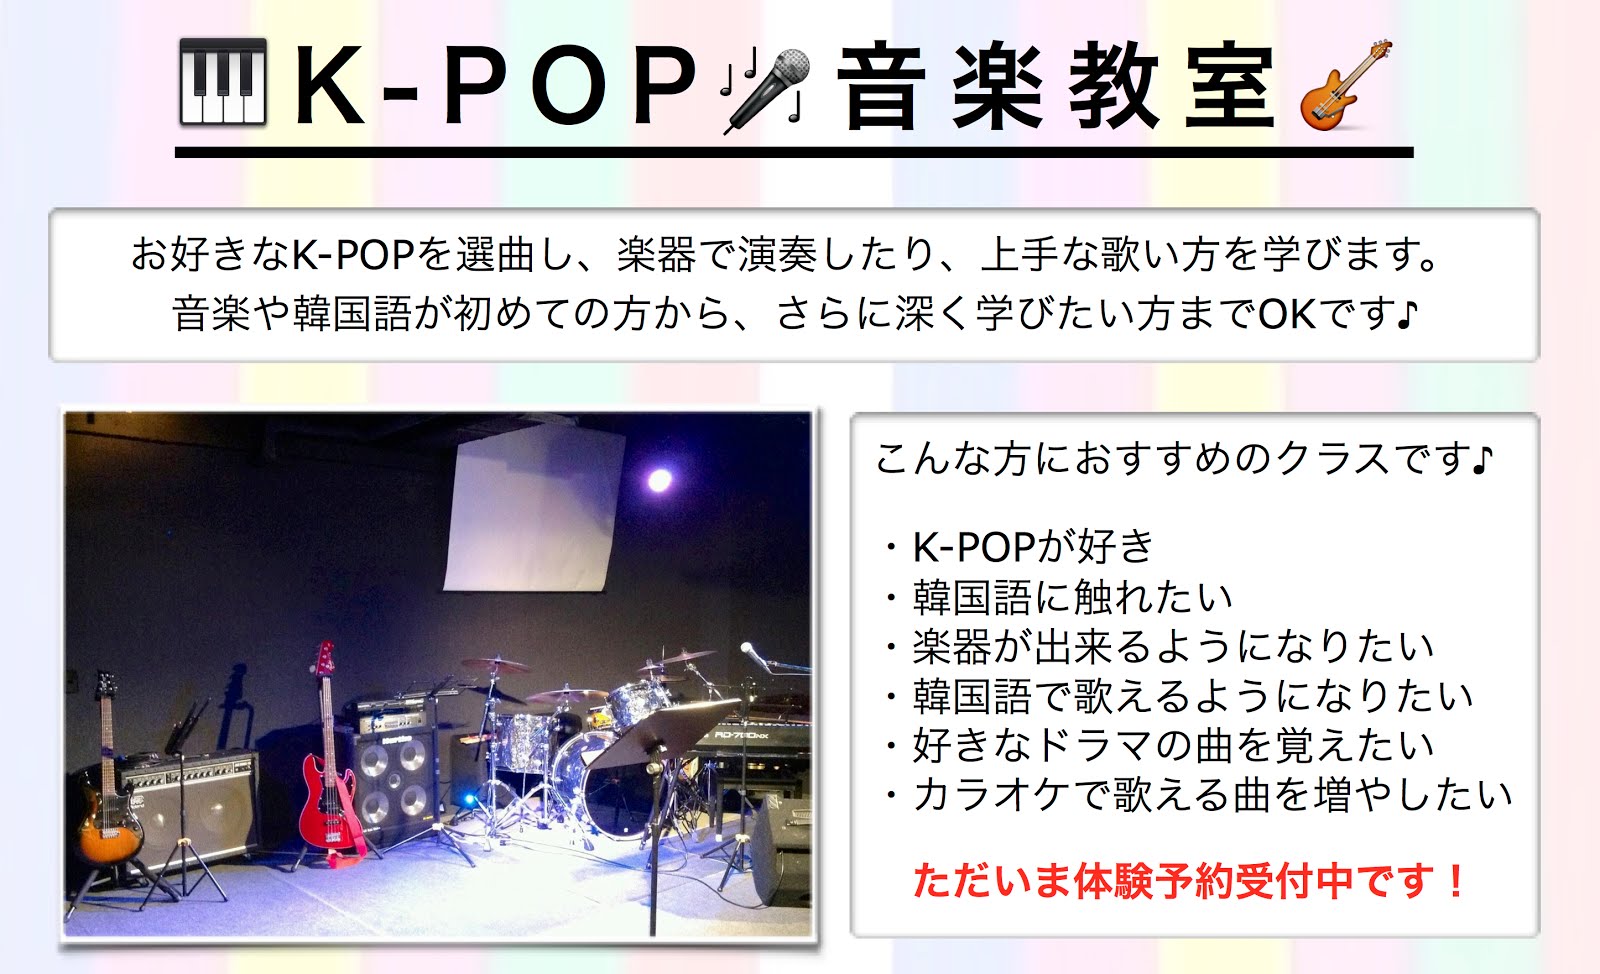 ♪K-POP音楽教室♪